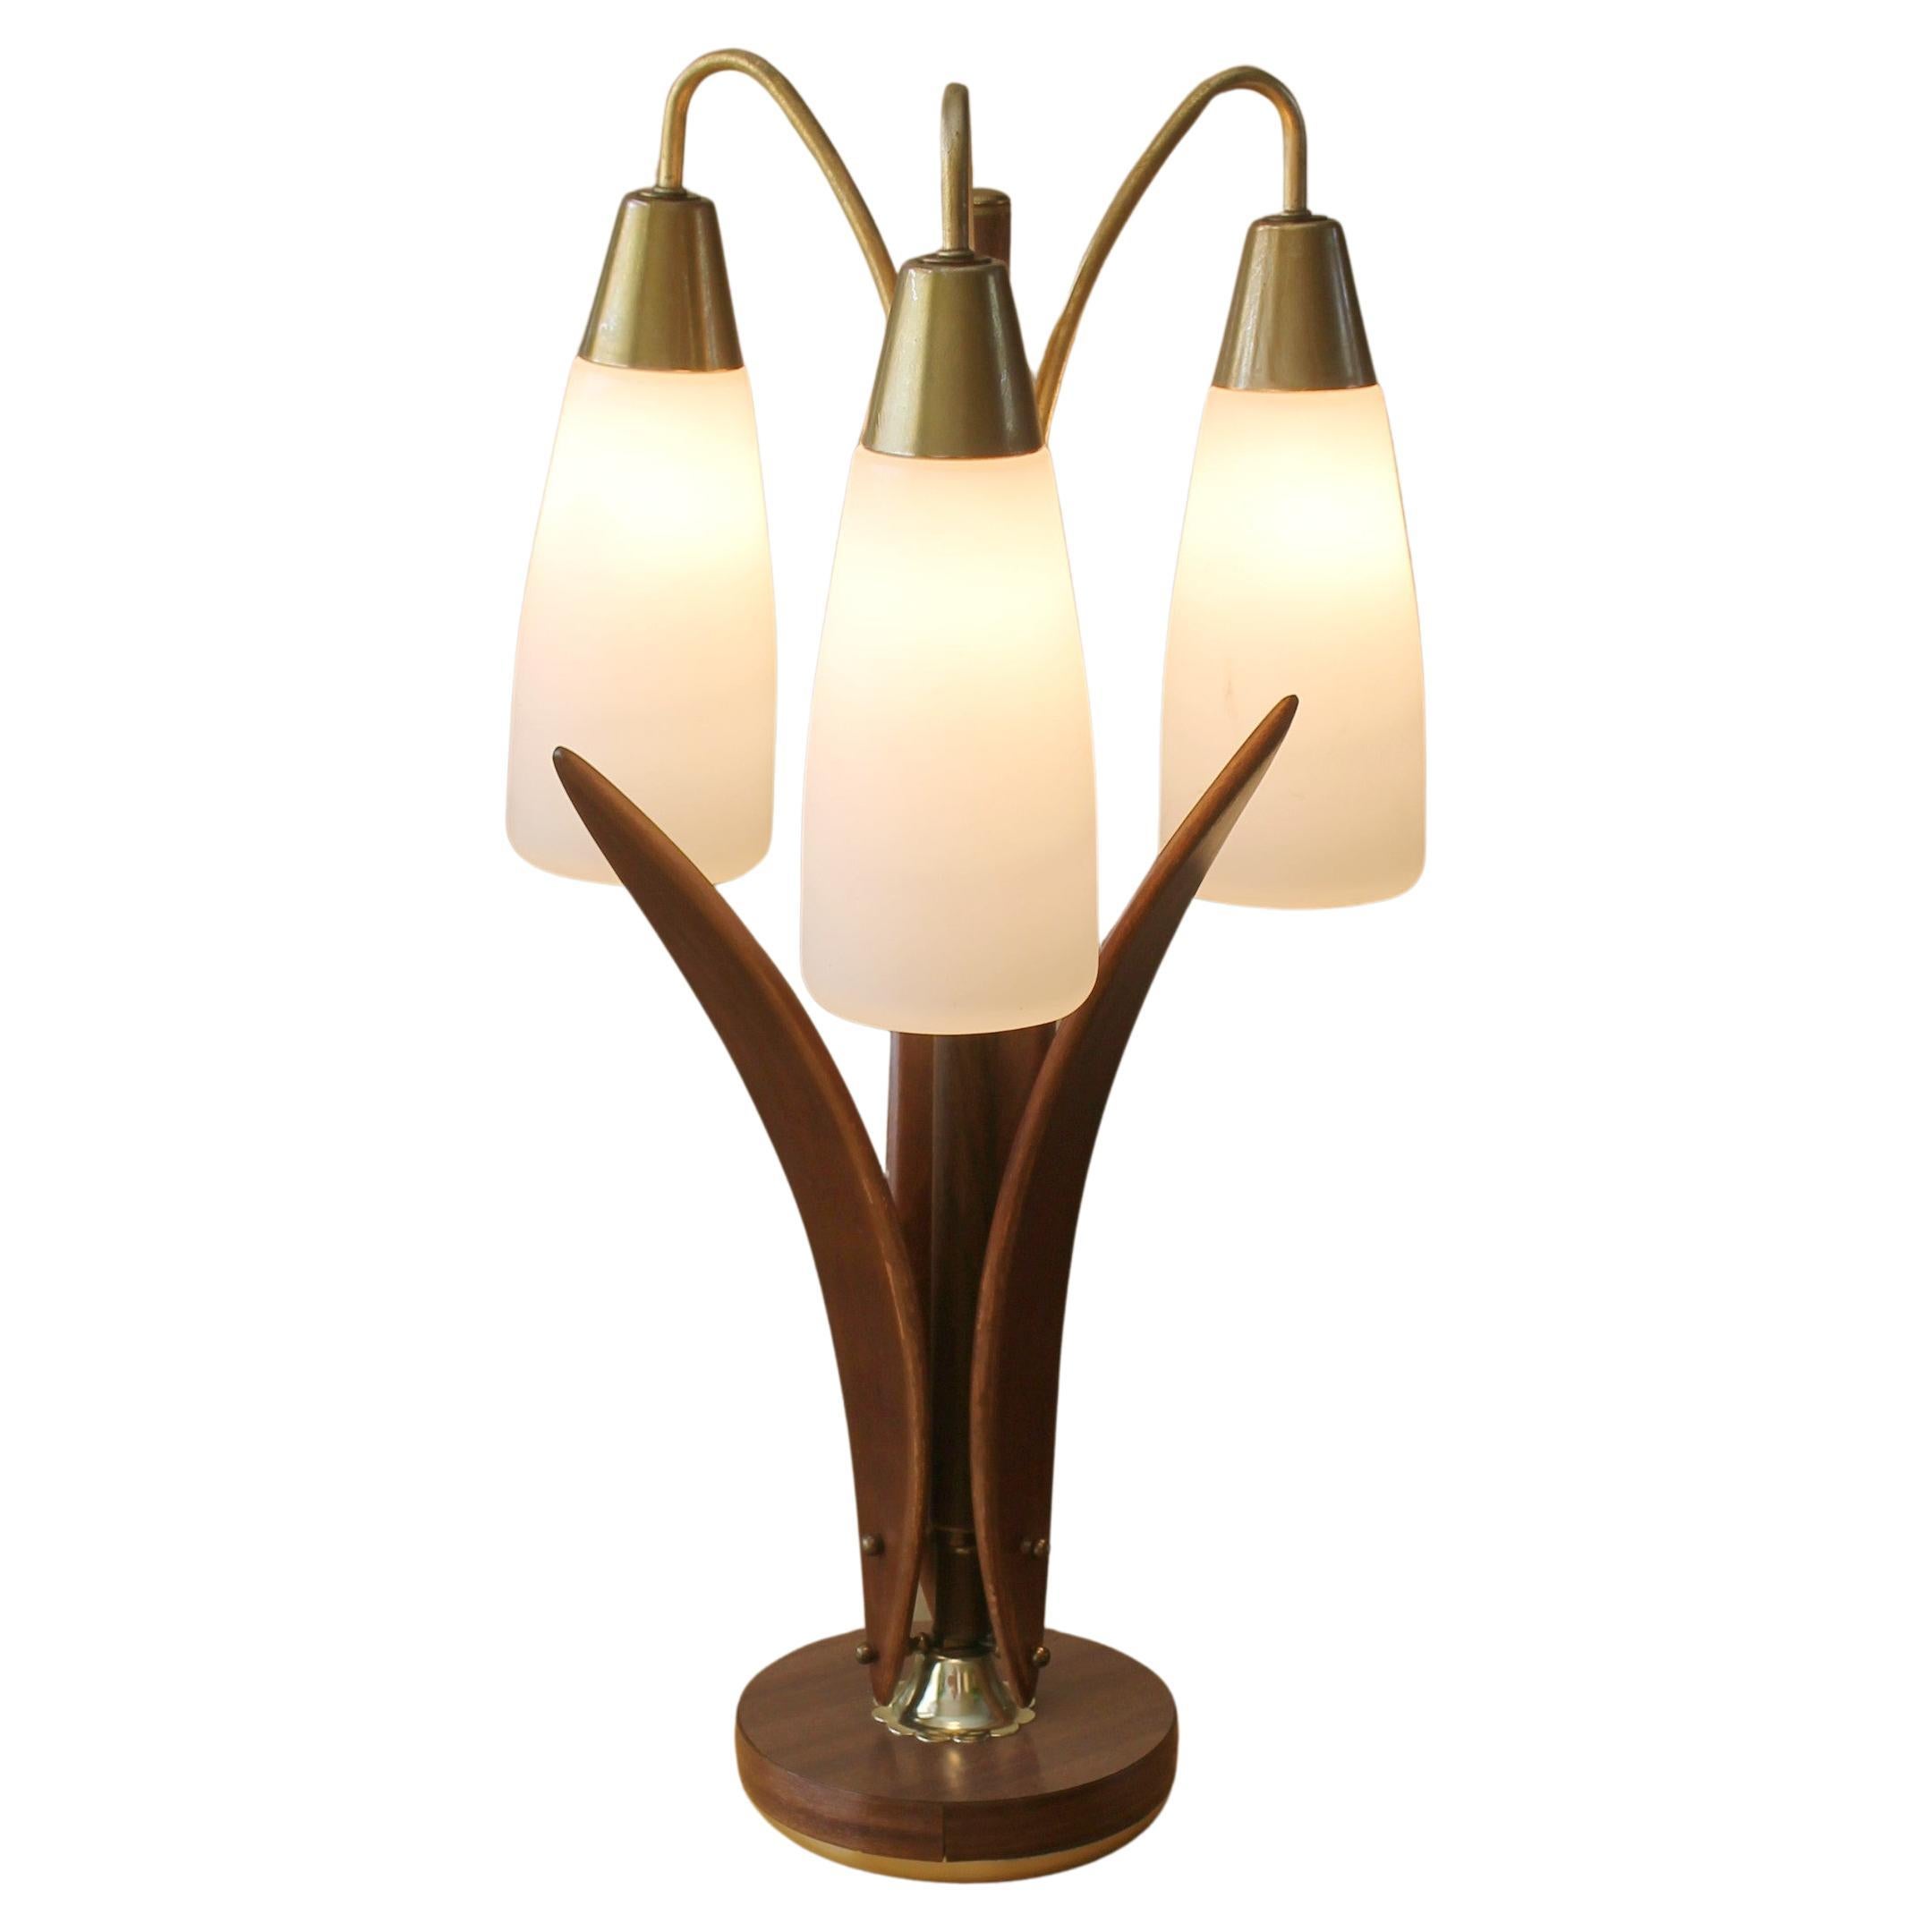 Exquisite Danish Modern 3 Shade Glass and Walnut Lamp 1950s Mid Century Lighting